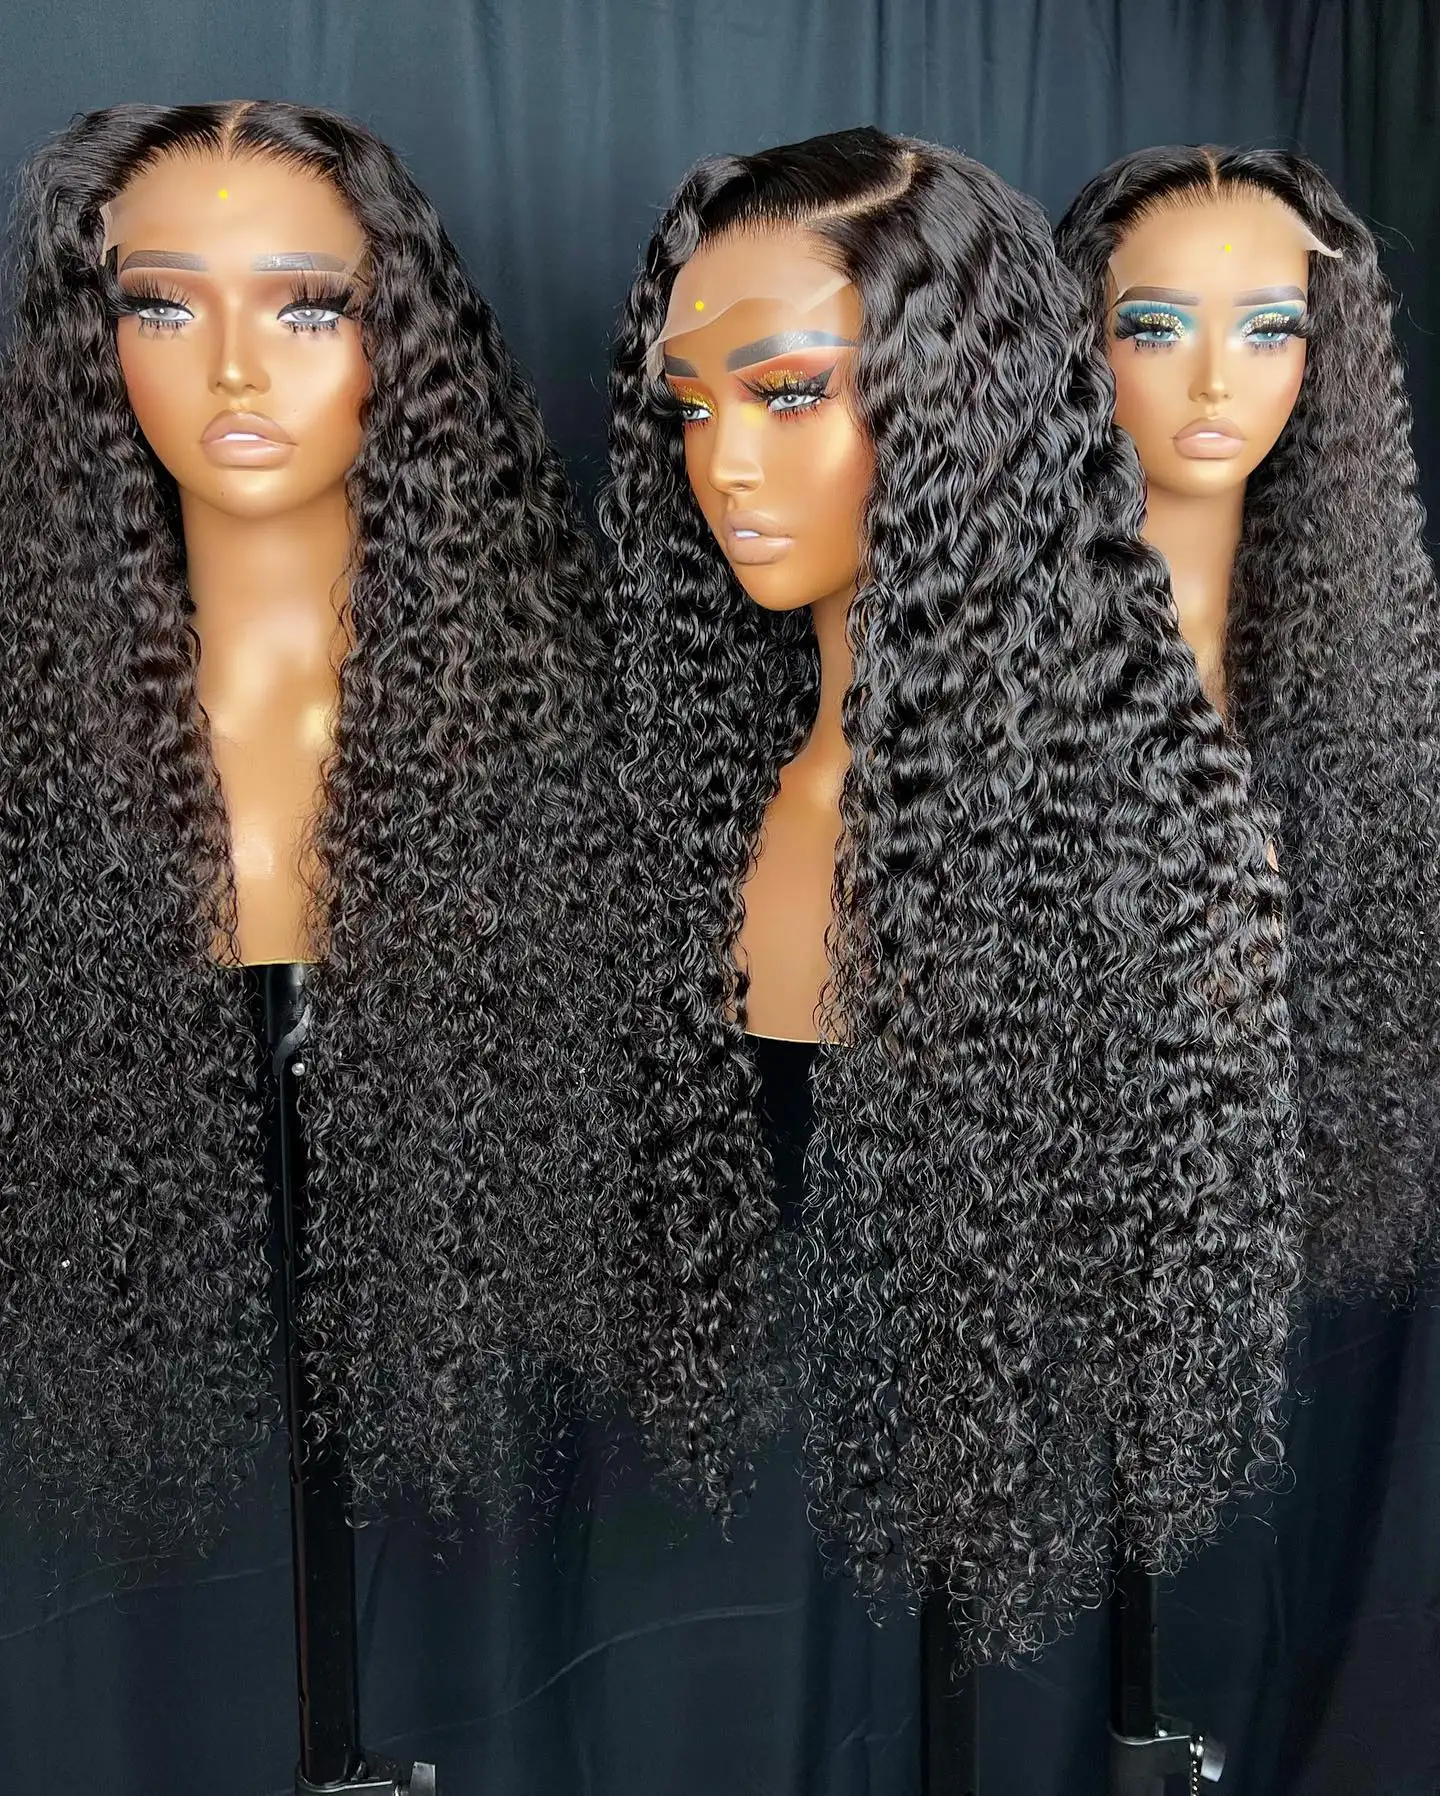 Bali designable extensions de cheveux, cantu cheveux produits acheter des tissages péruviens et brésiliens, extensions de cheveux crépus afro